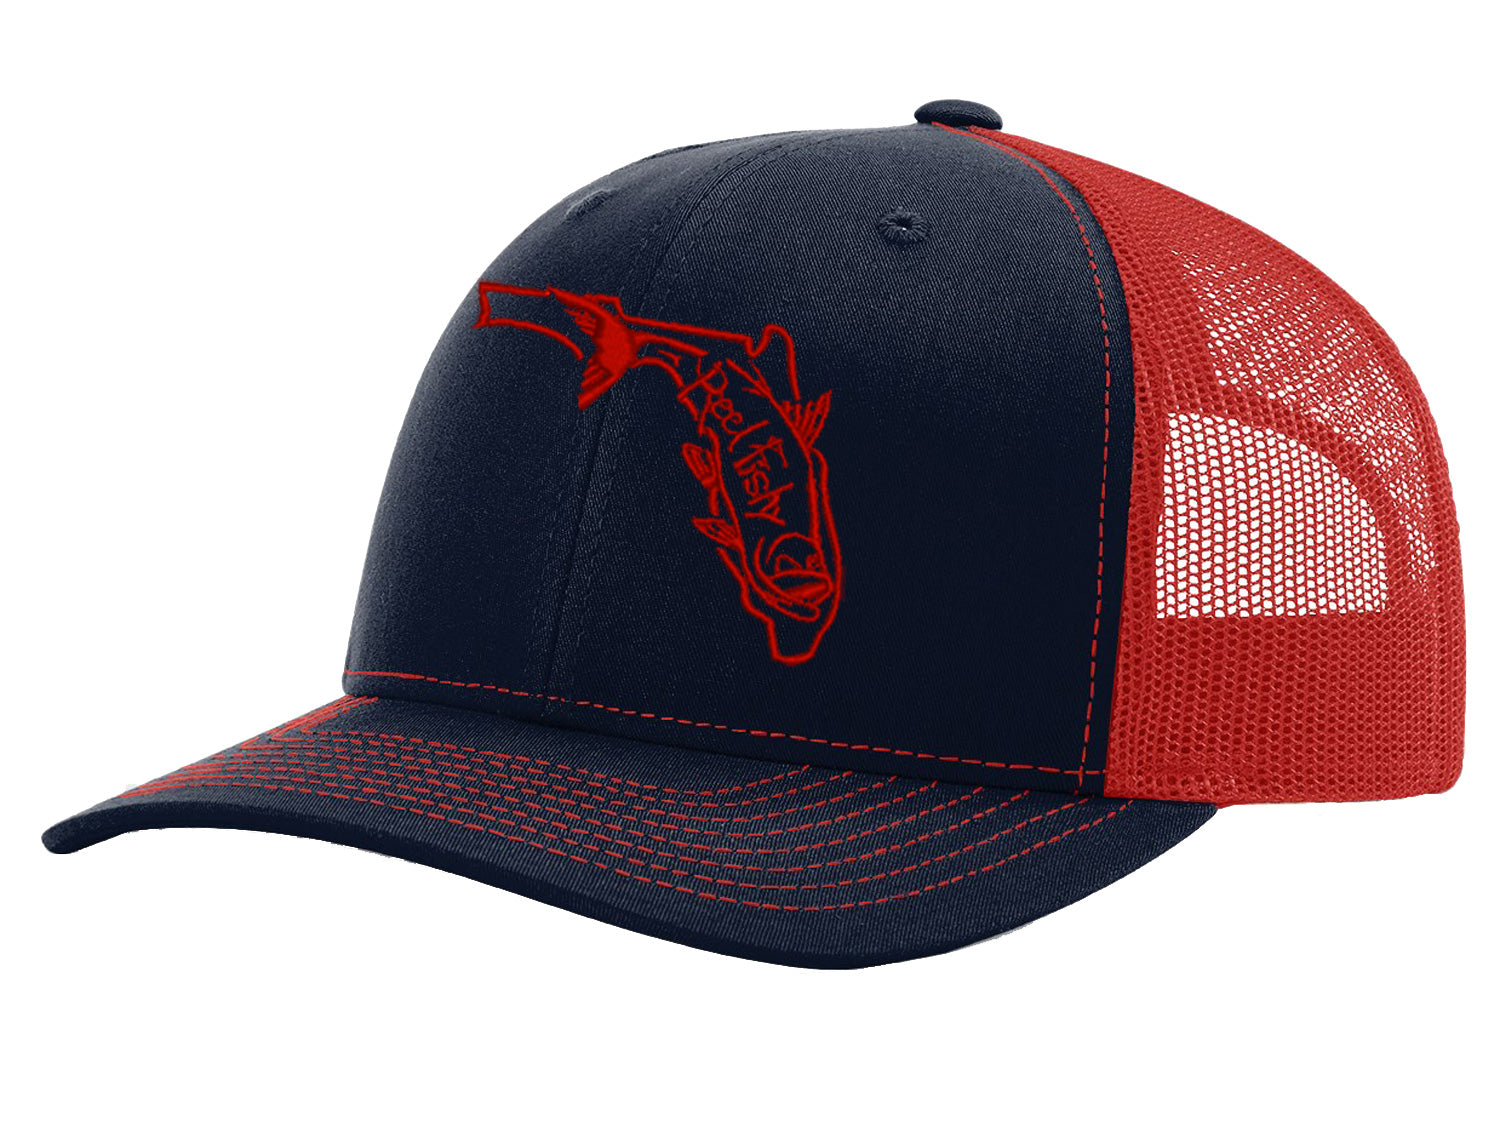 State of Florida Tarpon Reel Fishy Logo - Navy/Red Trucker hat w/Red Tarpon Logo